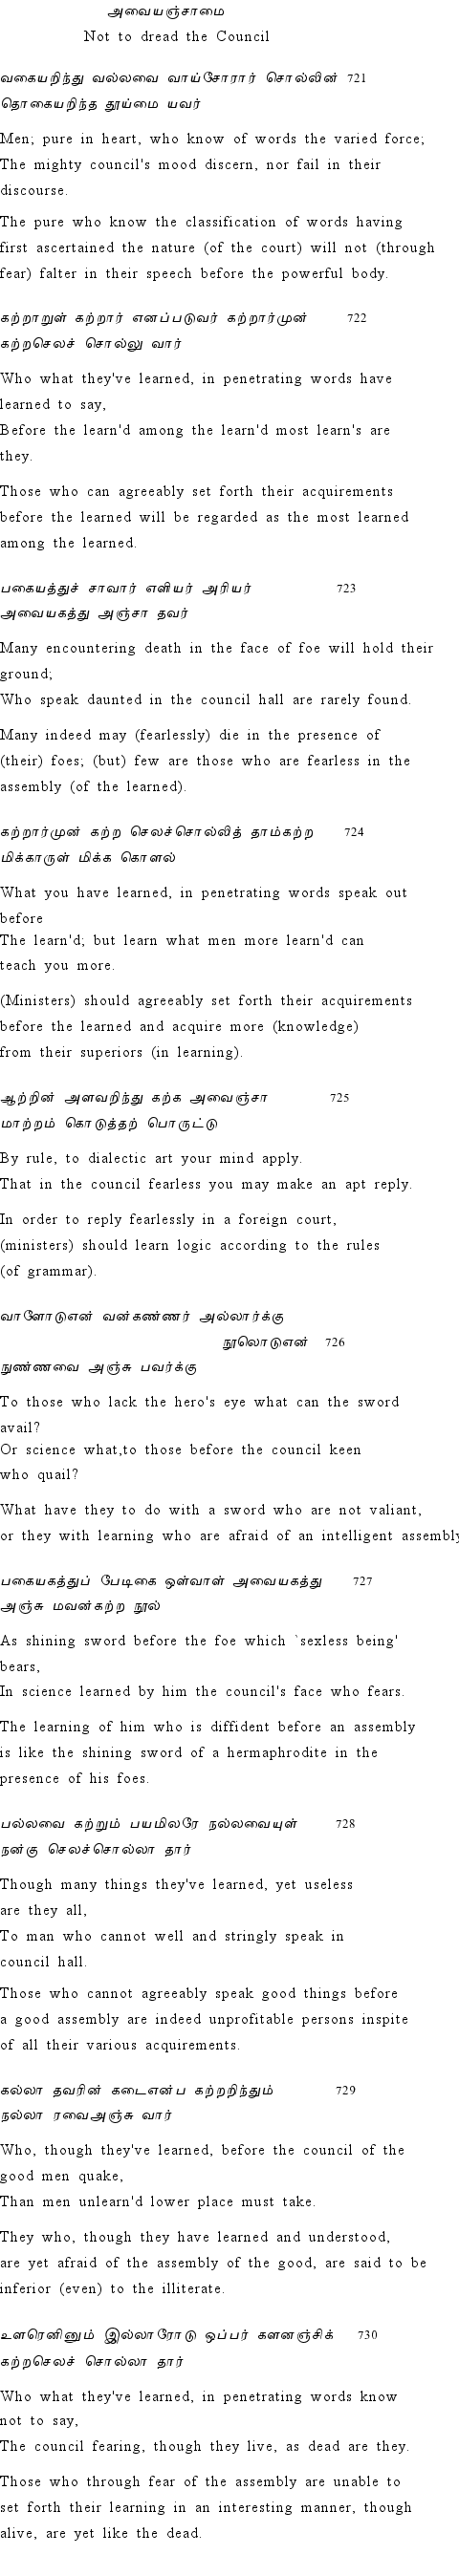 Text of Adhikaram 73